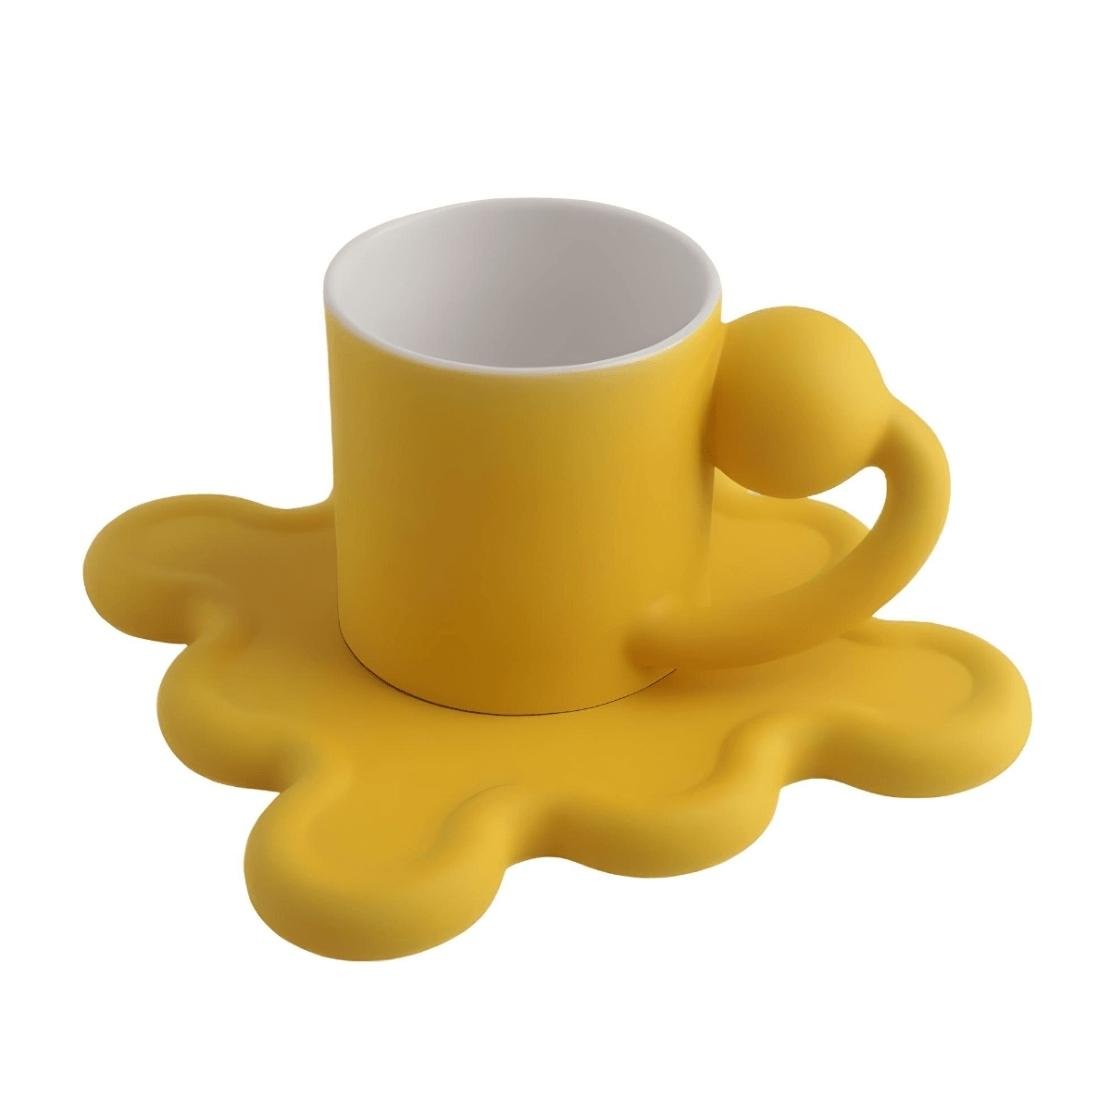 Yellow ball handle mug with wavy wiggle saucer